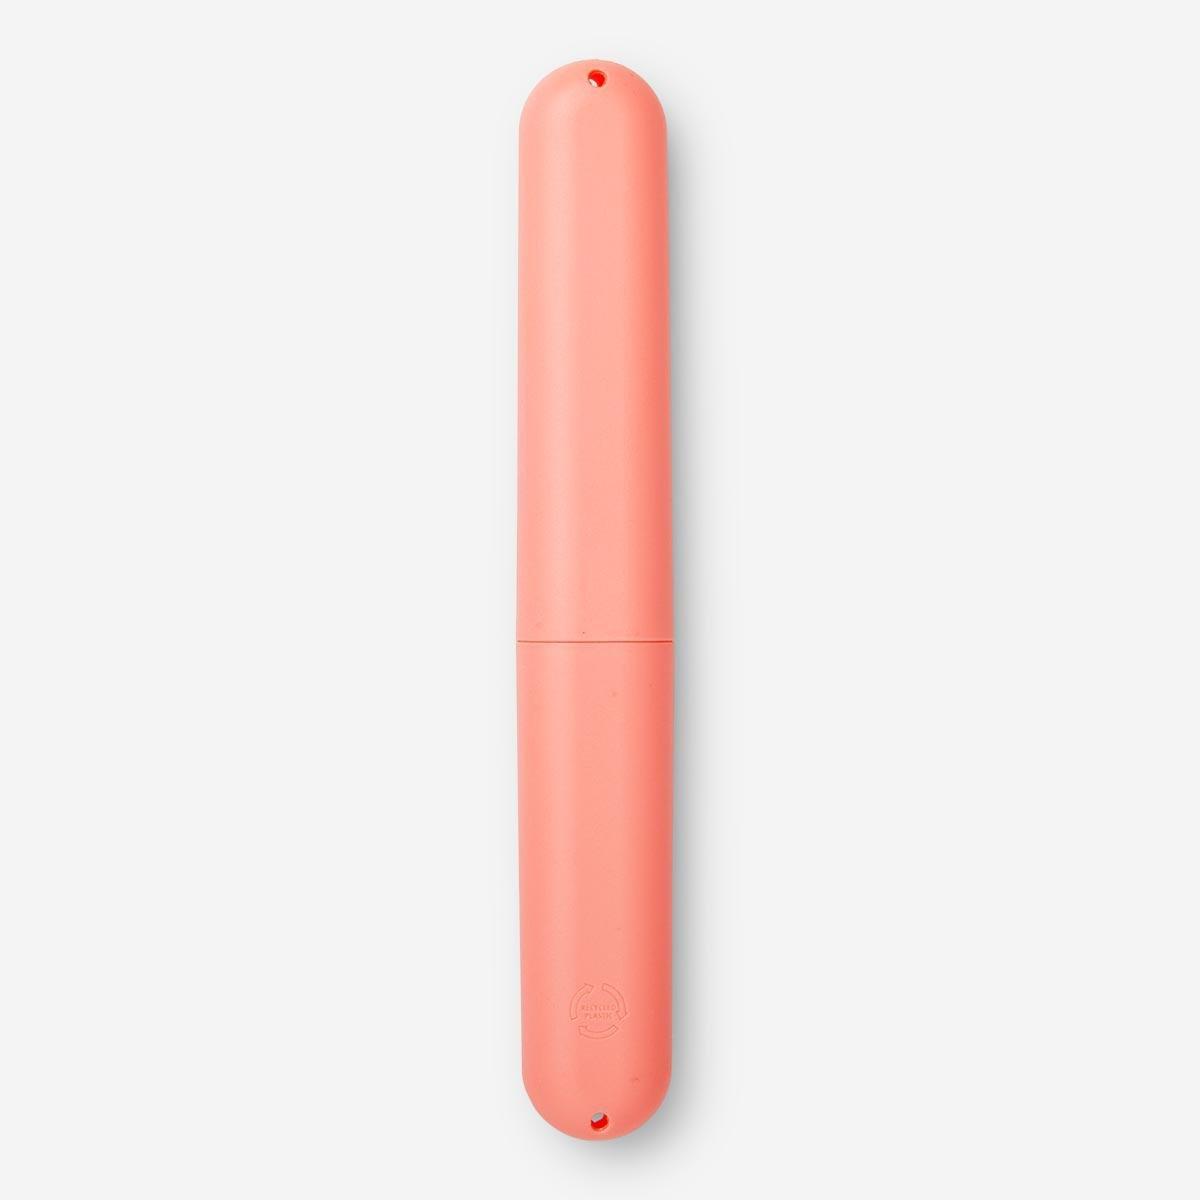 Pink toothbrush case